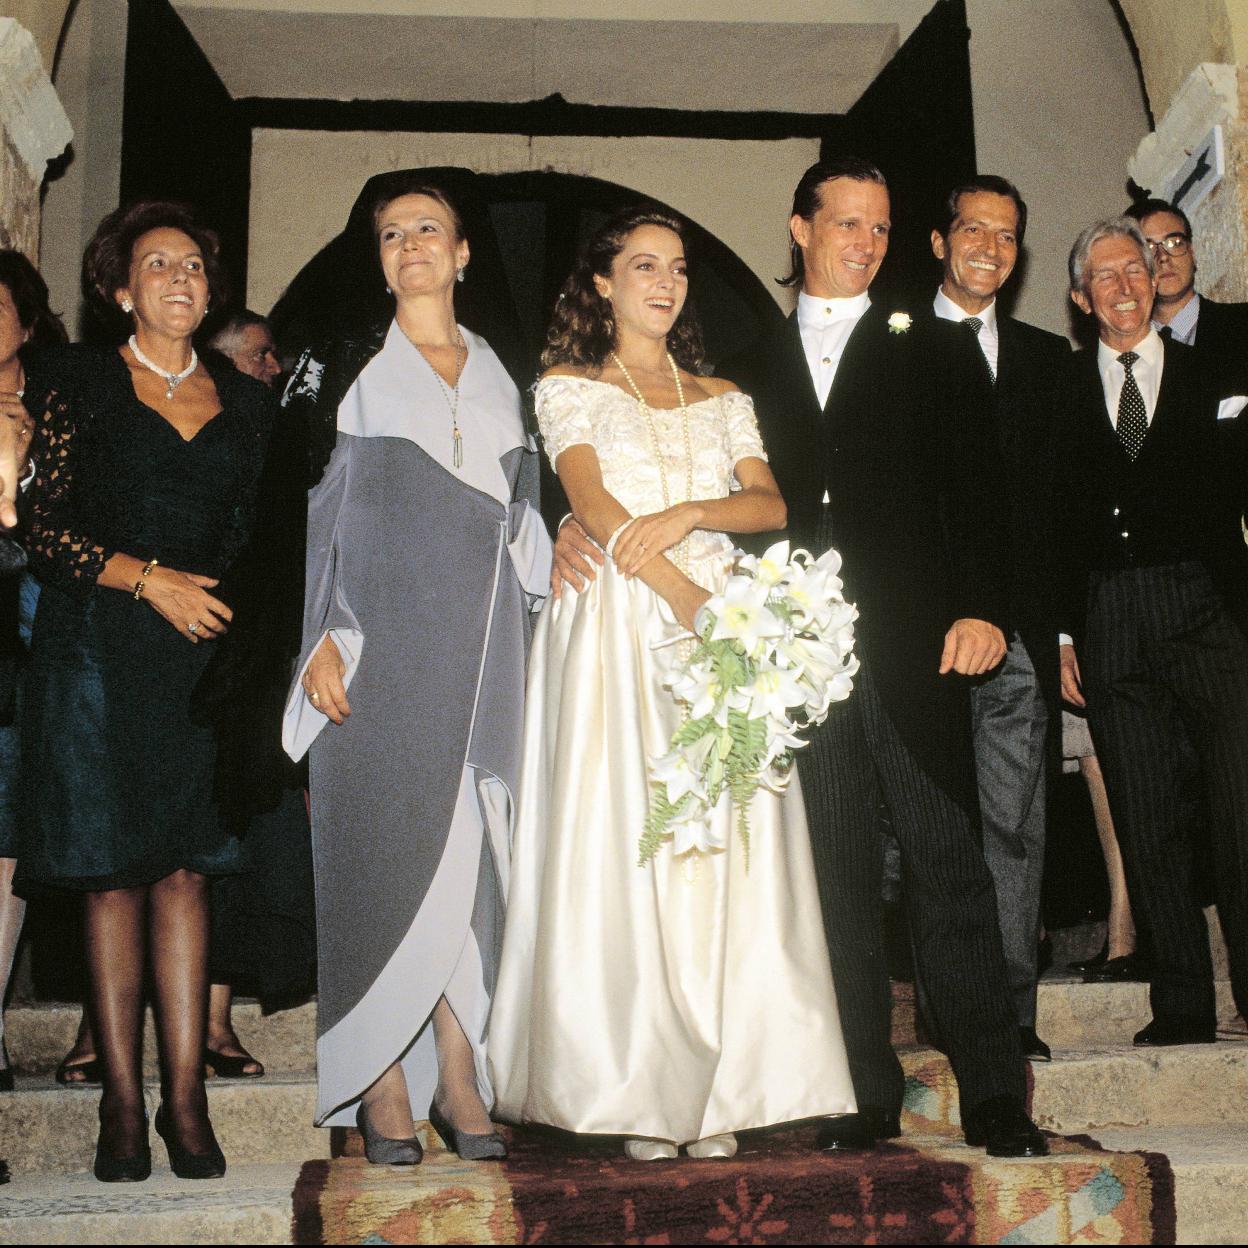 La boda de Sonsoles Suárez y Pocholo Martínez-Bordiú un evento con grandes faltas, solo dos años de matrimonio y vidas muy diferentes Mujer Hoy